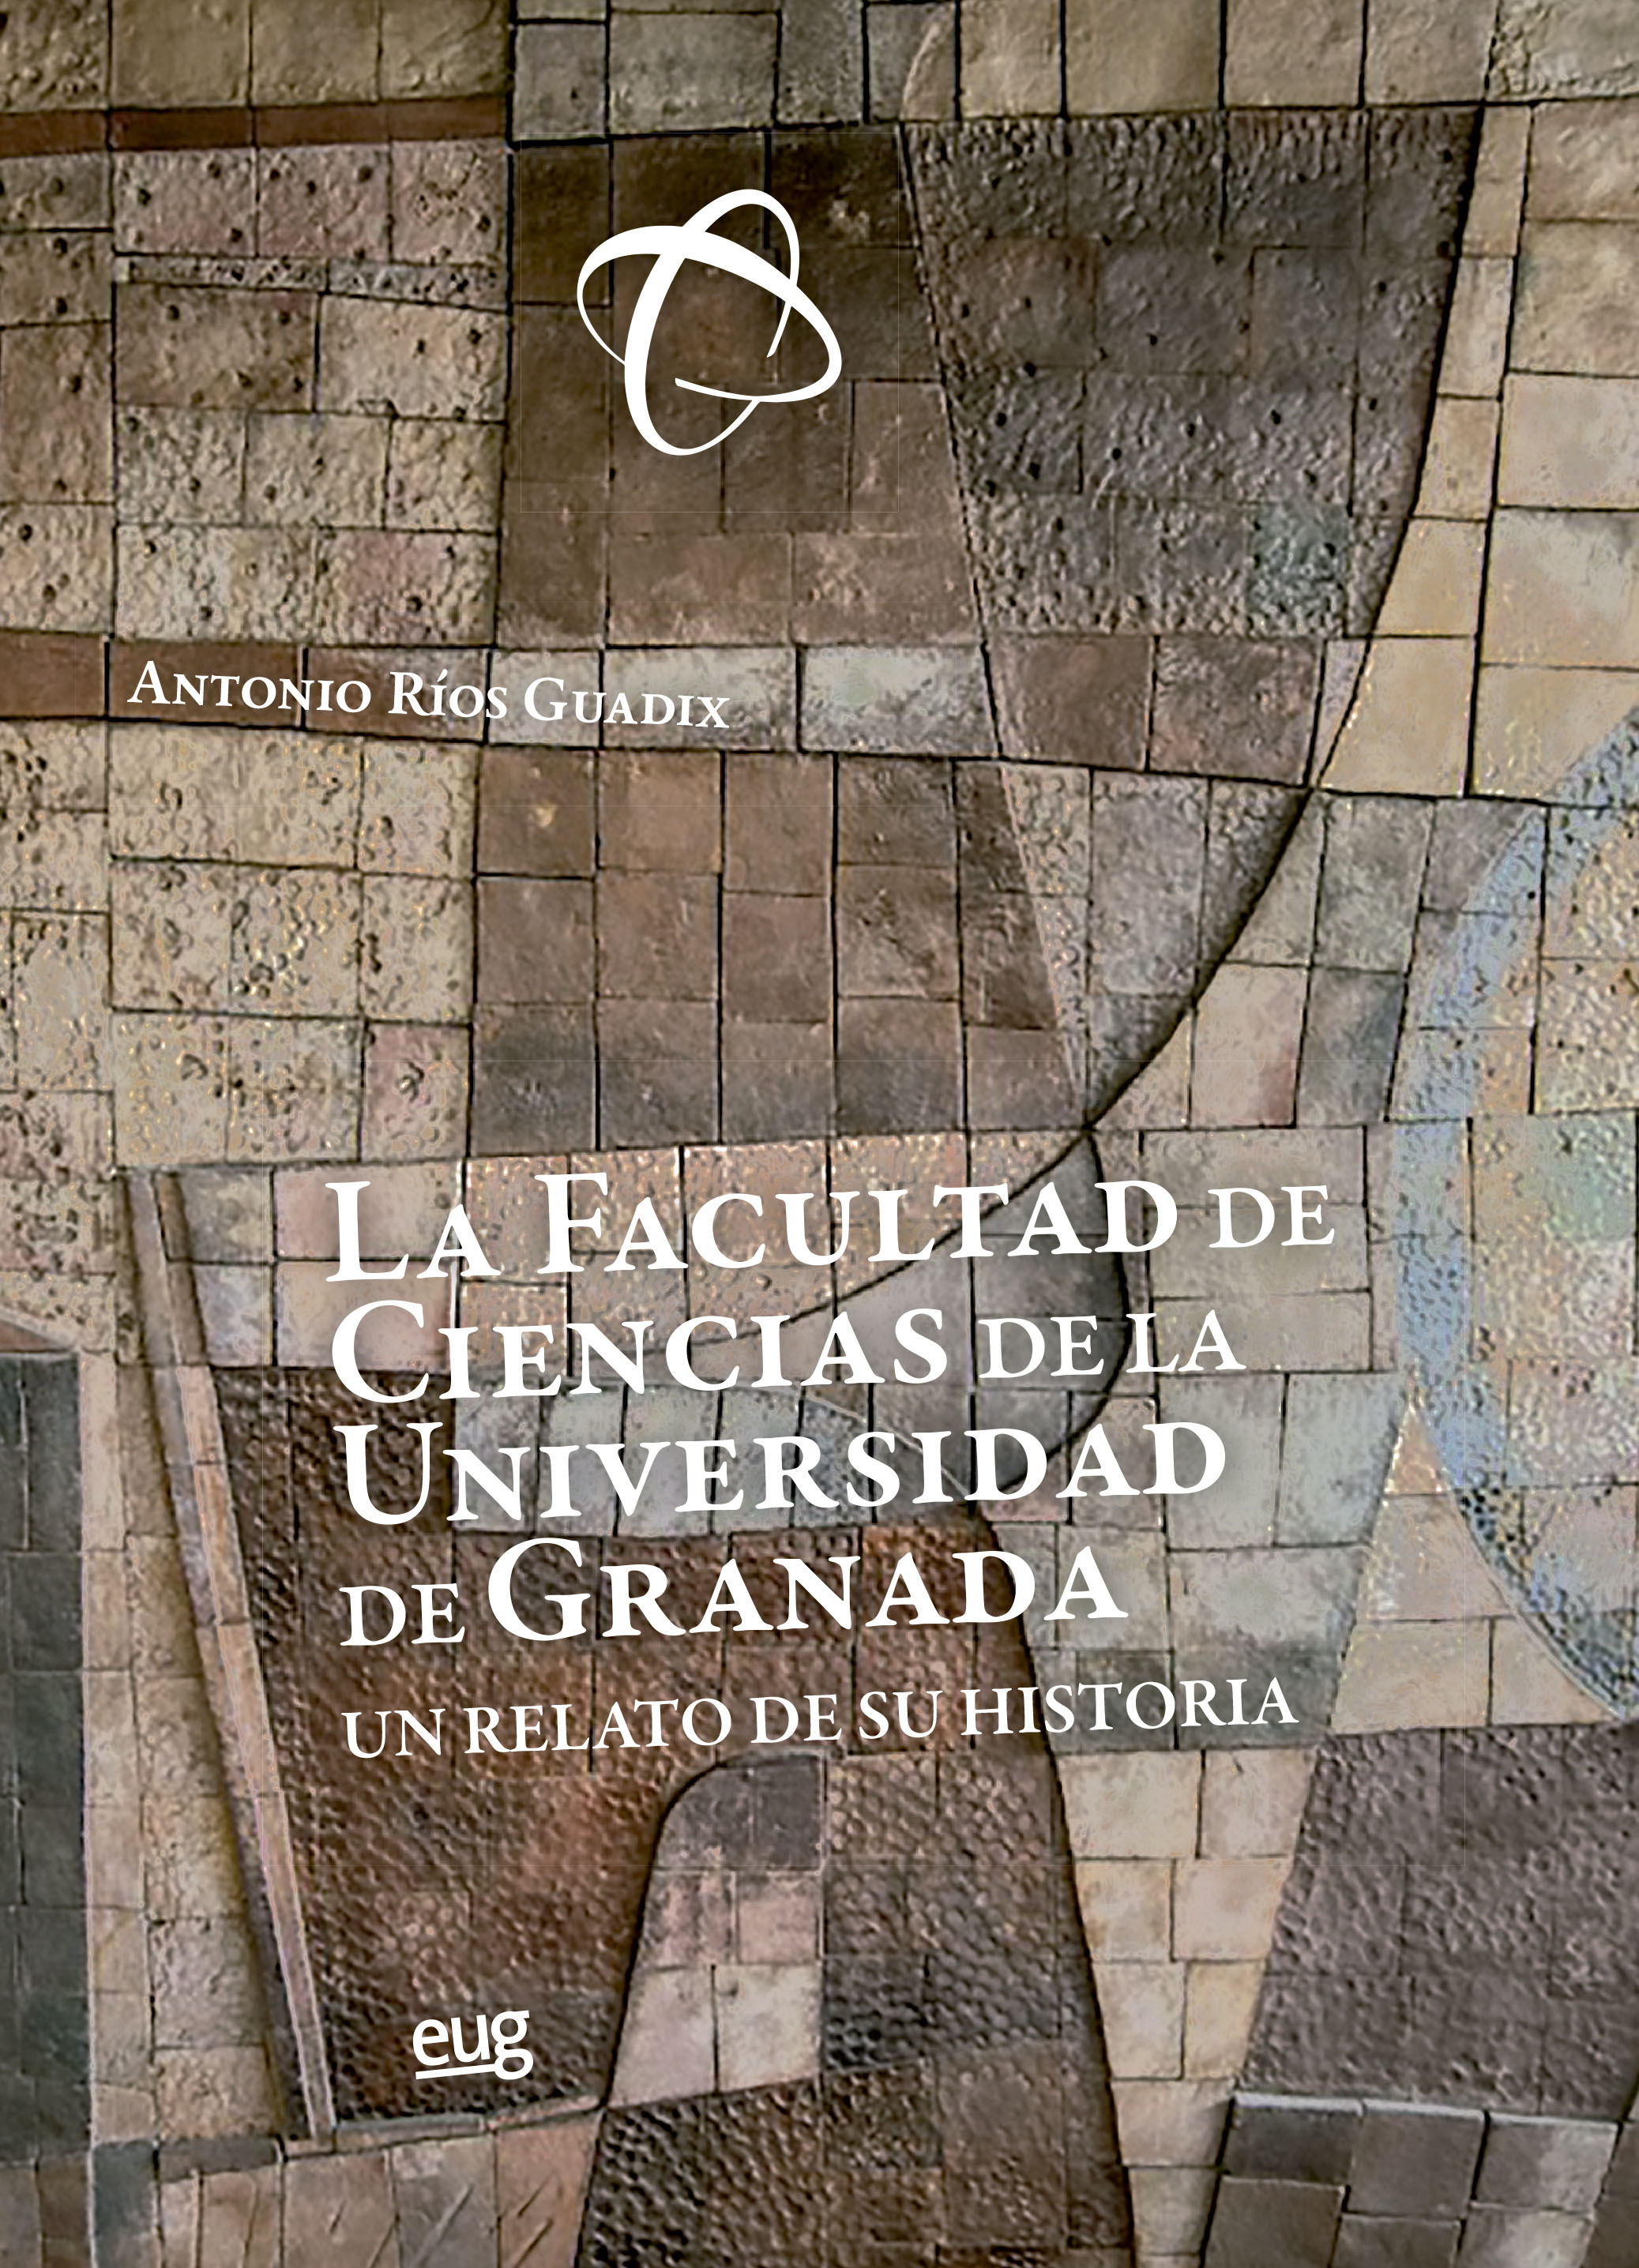 Imagen de portada del libro La Facultad de Ciencias de la Universidad de Granada